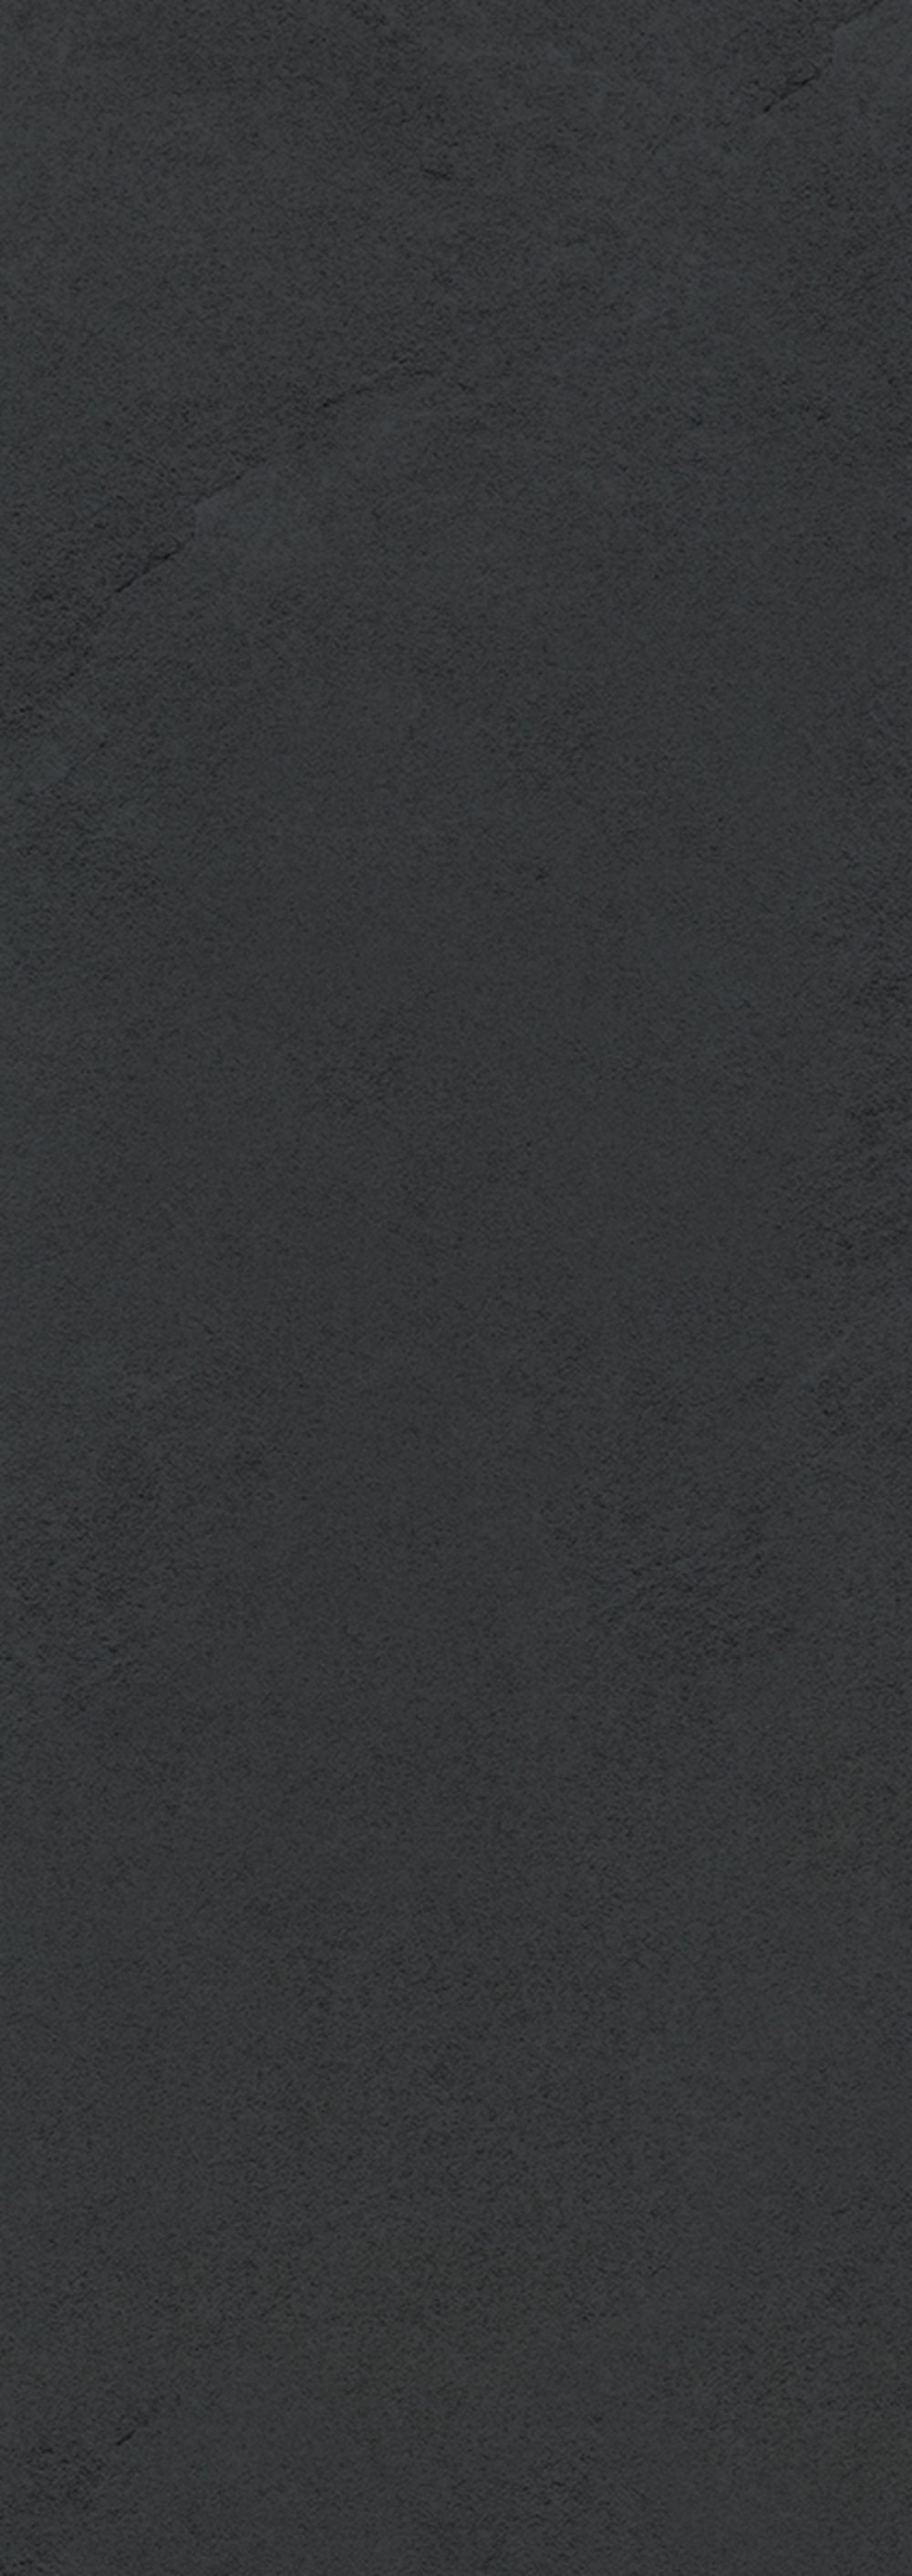 91090617 Керамическая плитка Alba Alba Grafite 25.1x70.9см 1.25 м² цвет серый STLM-0478849 КЕРЛАЙФ